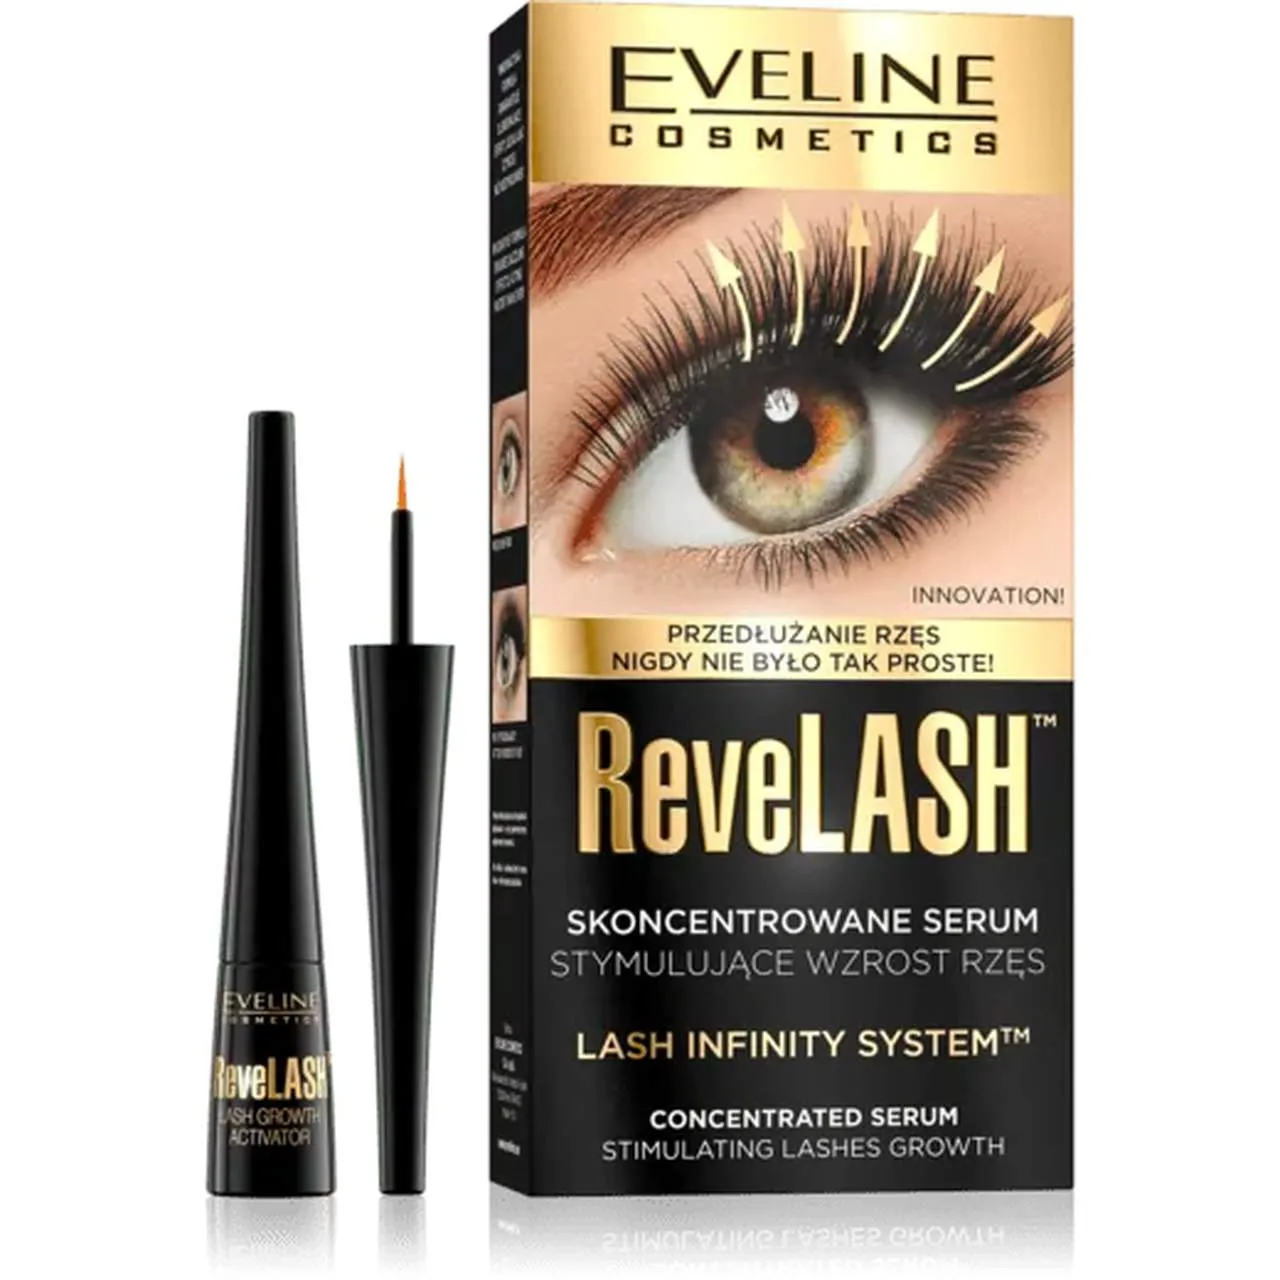 Eveline Cosmetics Revelash, serum stymulujące wzrost rzęs, 3 ml